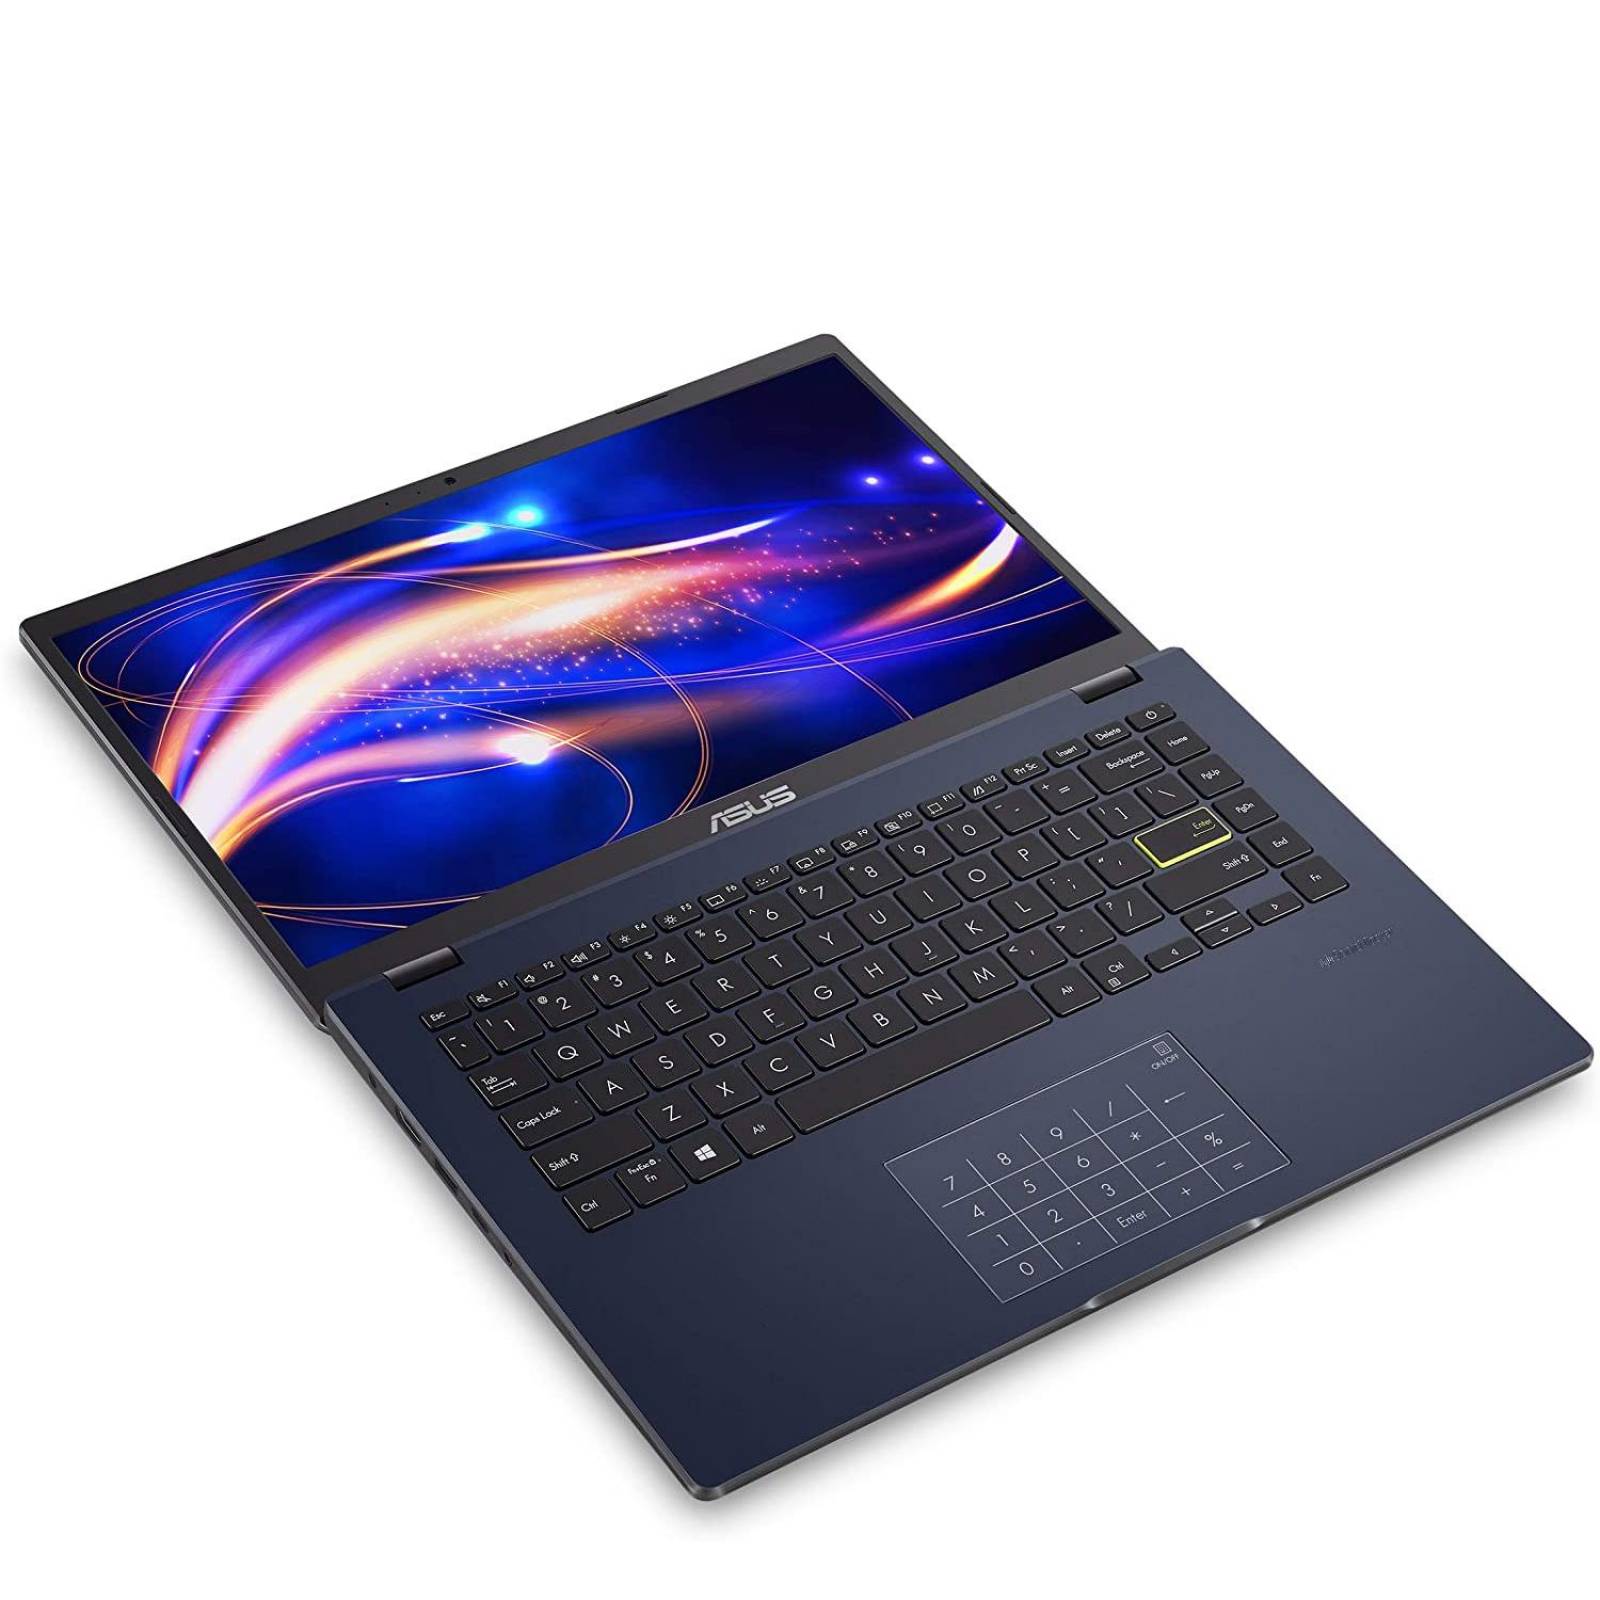 Laptop Asus L410ma Intel Dual Core N4020 4gb Ssd 128gb Pantalla 14 Wif 7858